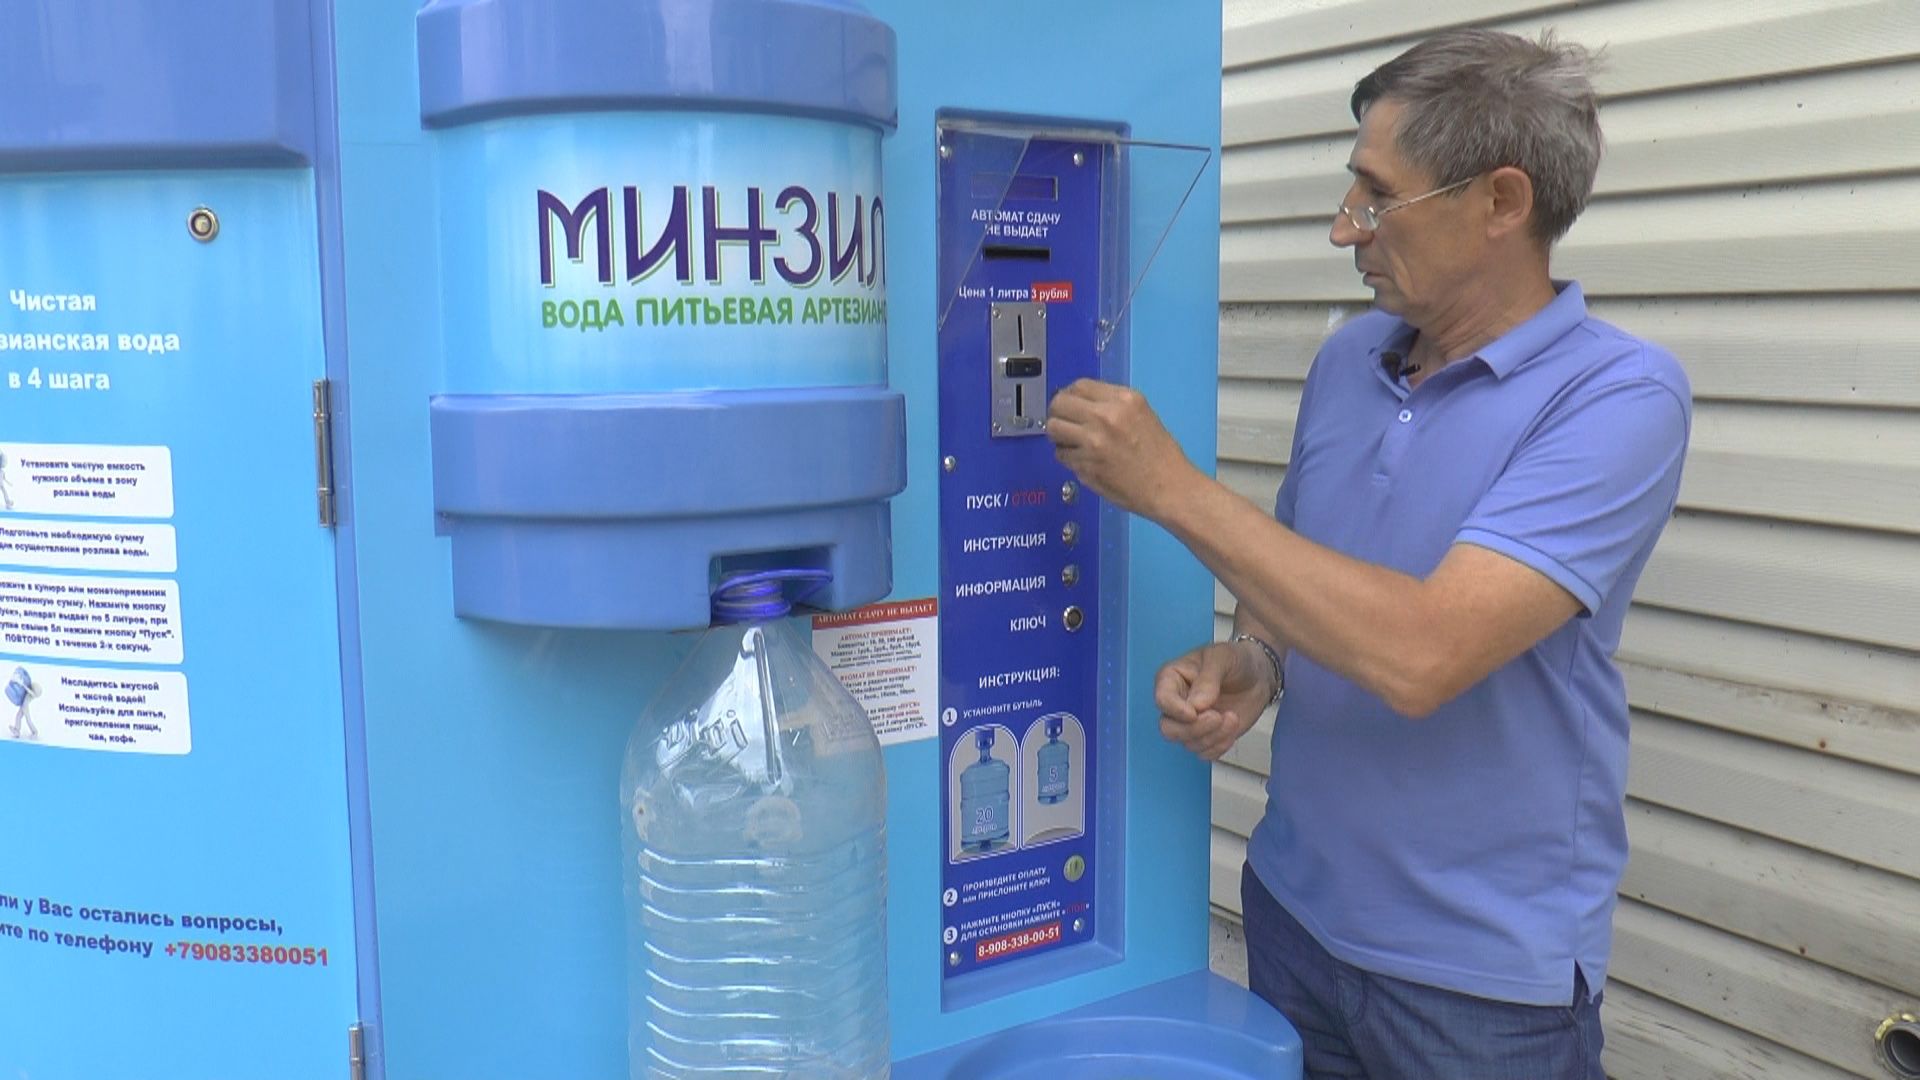 Реализовывать воду. Артезианская вода автоматы. Автомат по продаже воды. Вода на разлив. Питьевая вода из аппарата.